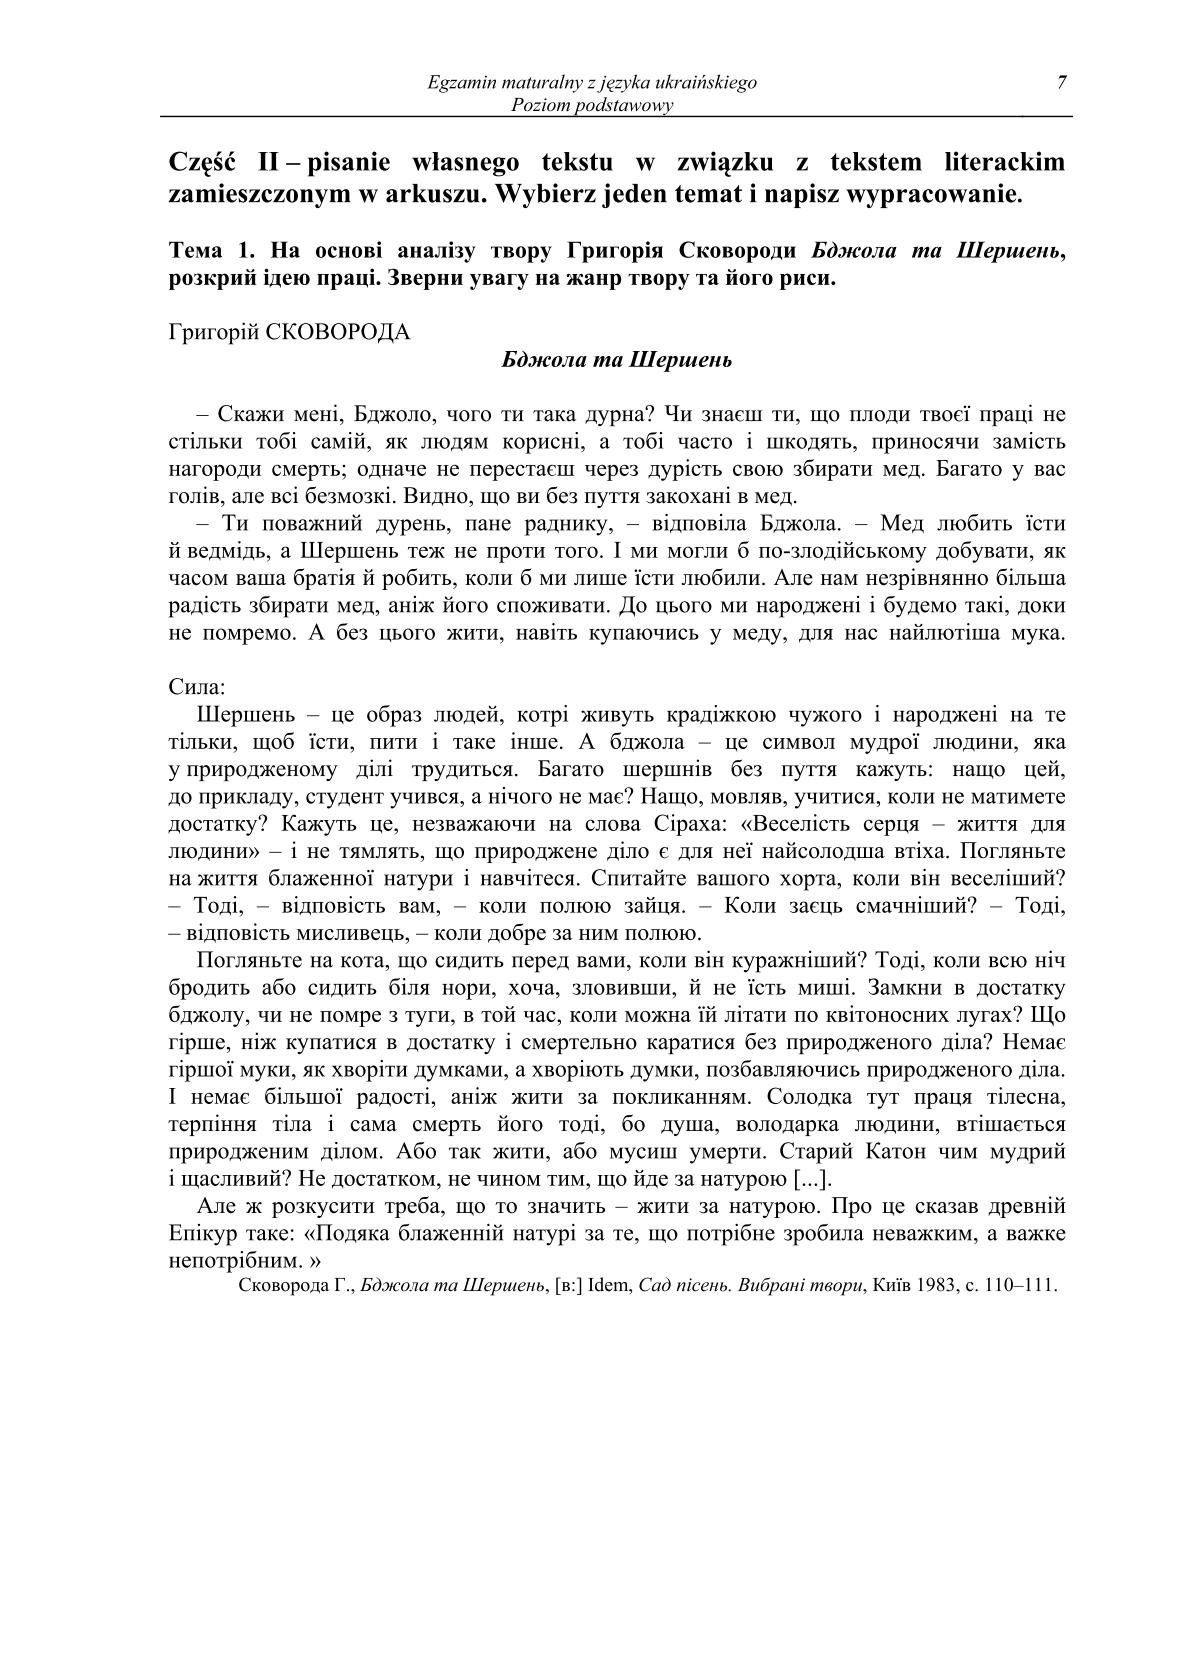 pytania-jezyk-ukrainski-poziom-podstawowy-matura-2014-str.7